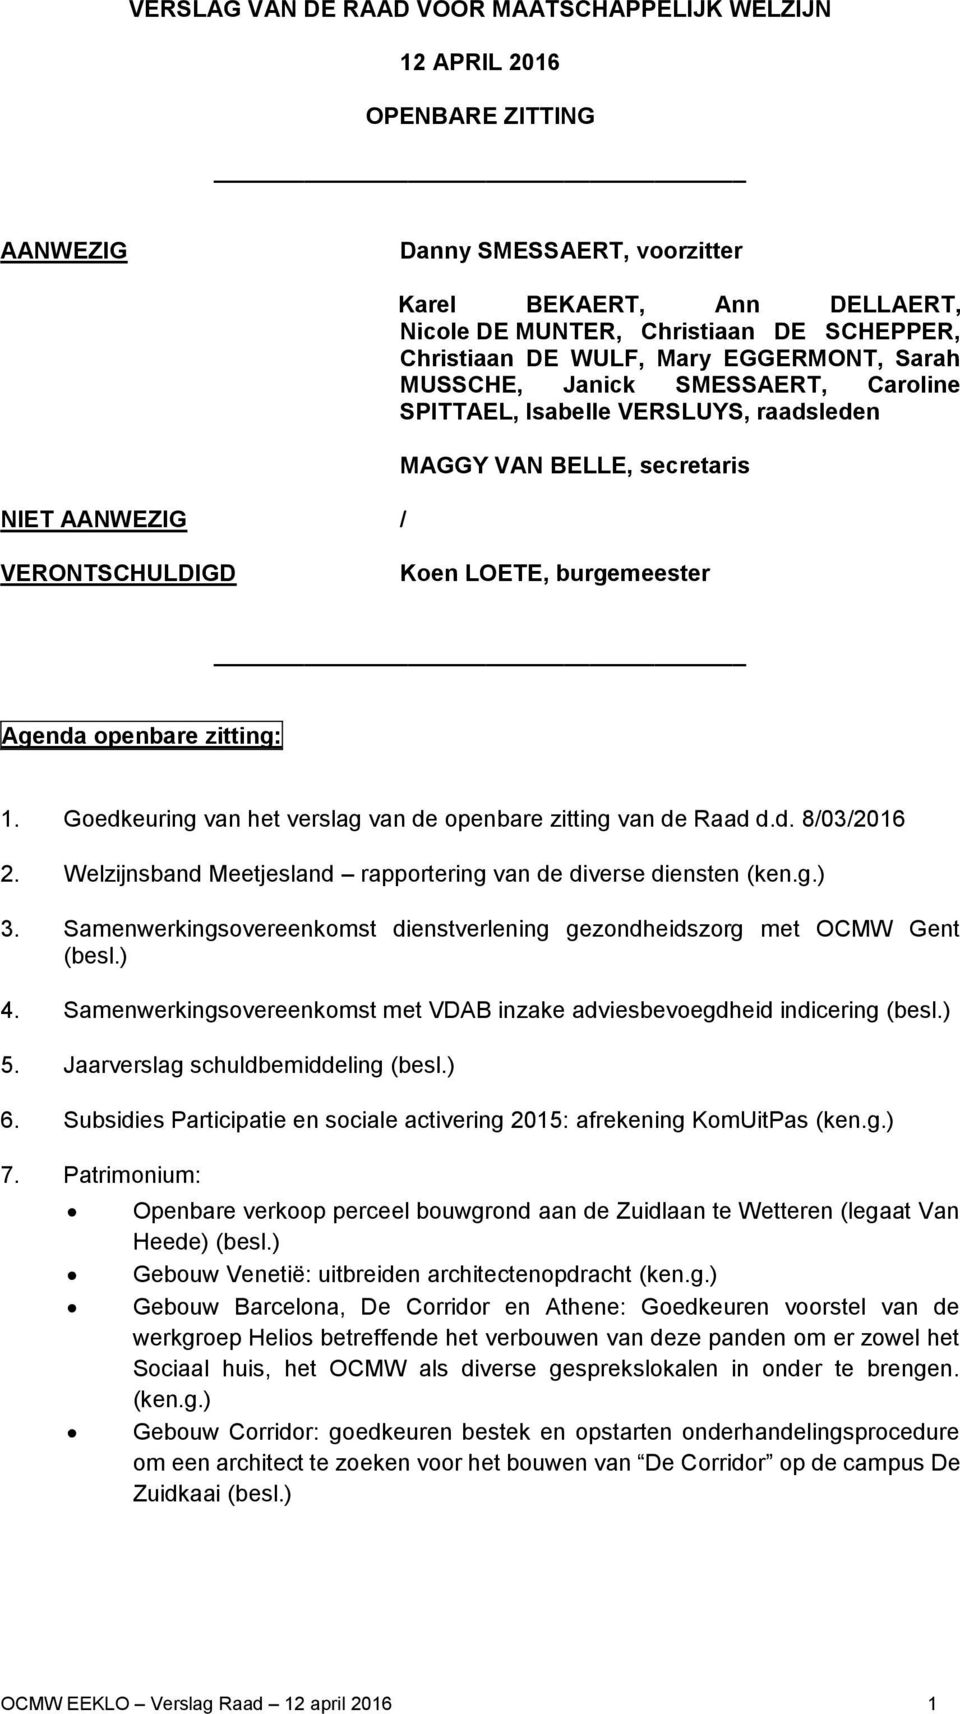 Agenda openbare zitting: 1. Goedkeuring van het verslag van de openbare zitting van de Raad d.d. 8/03/2016 2. Welzijnsband Meetjesland rapportering van de diverse diensten (ken.g.) 3.